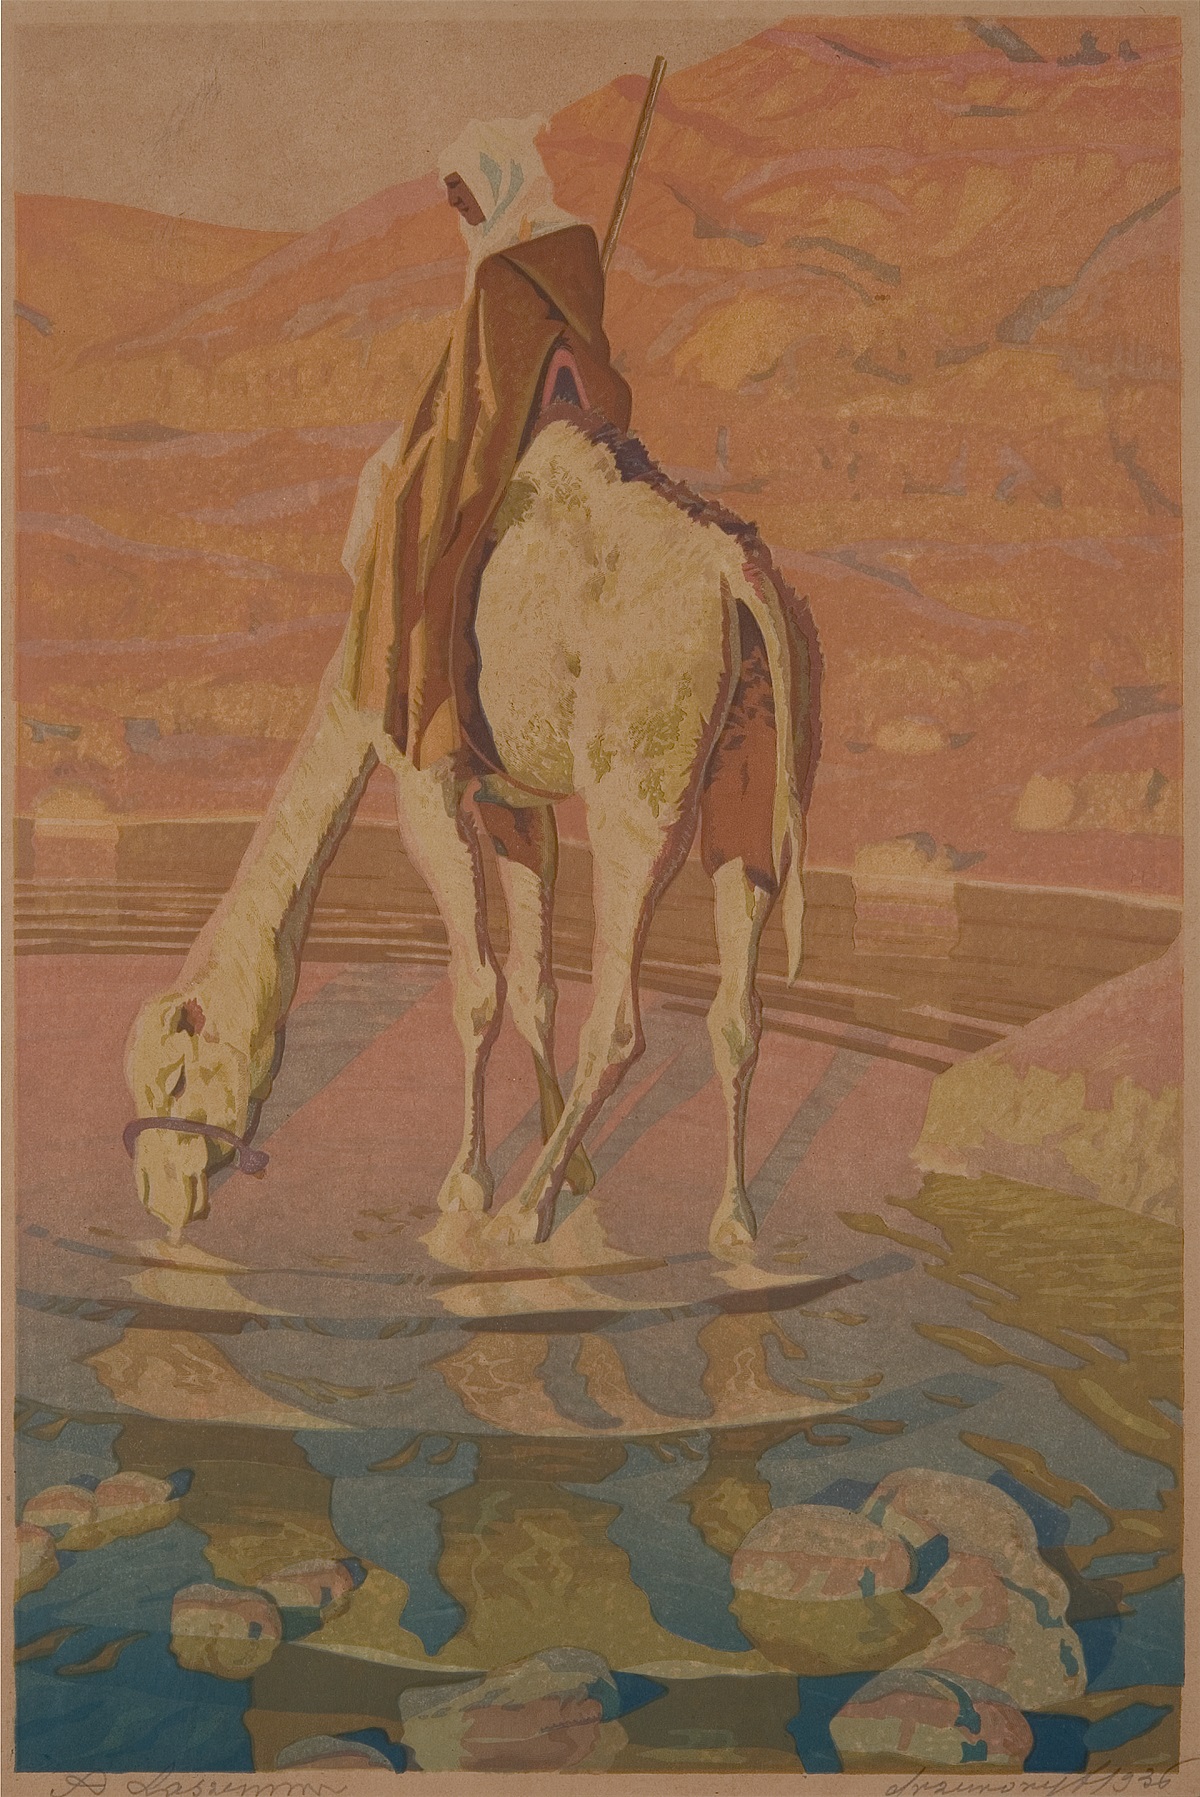 Arab on a Camel